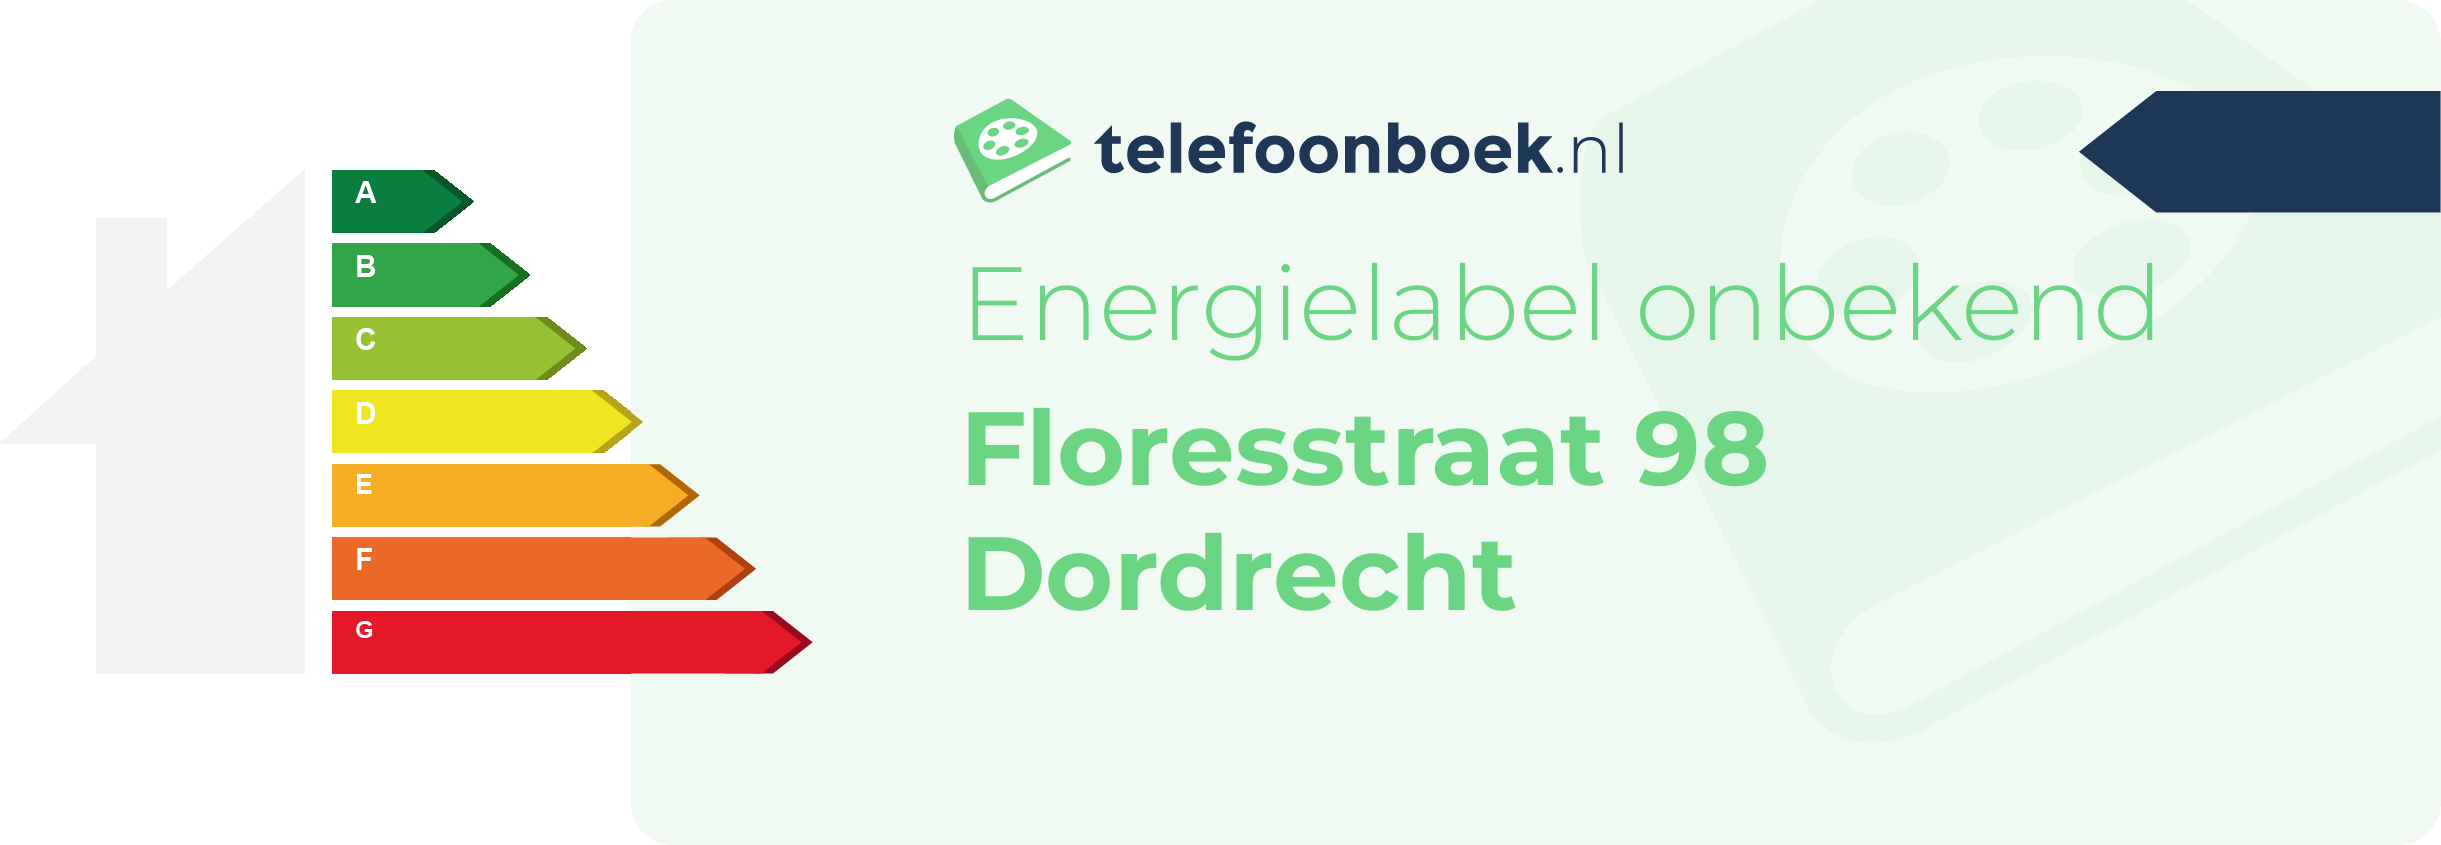 Energielabel Floresstraat 98 Dordrecht